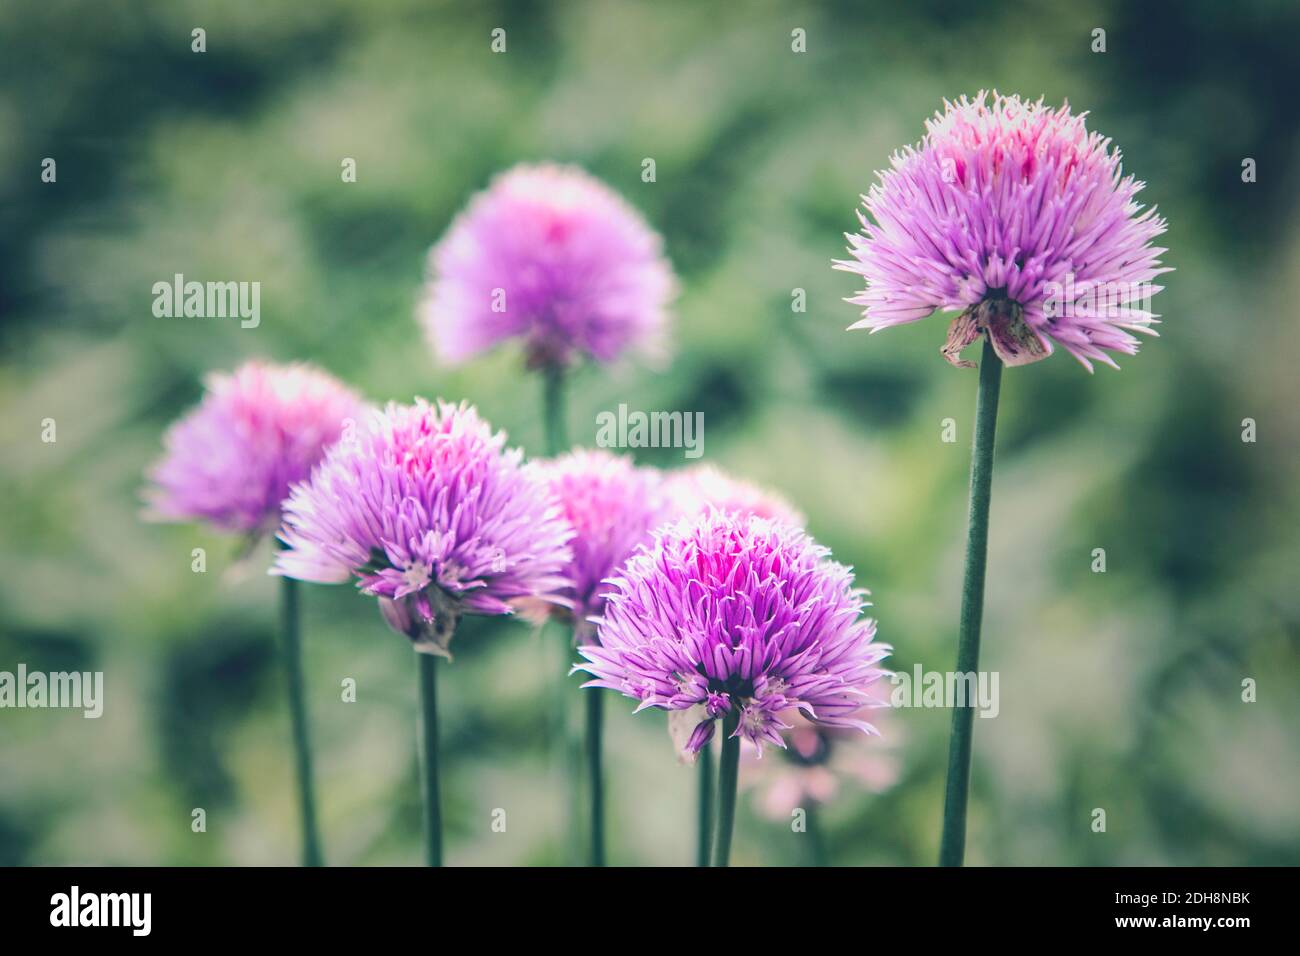 Allium, Allium sativum, mauve fleurs colorées en plein air. Banque D'Images